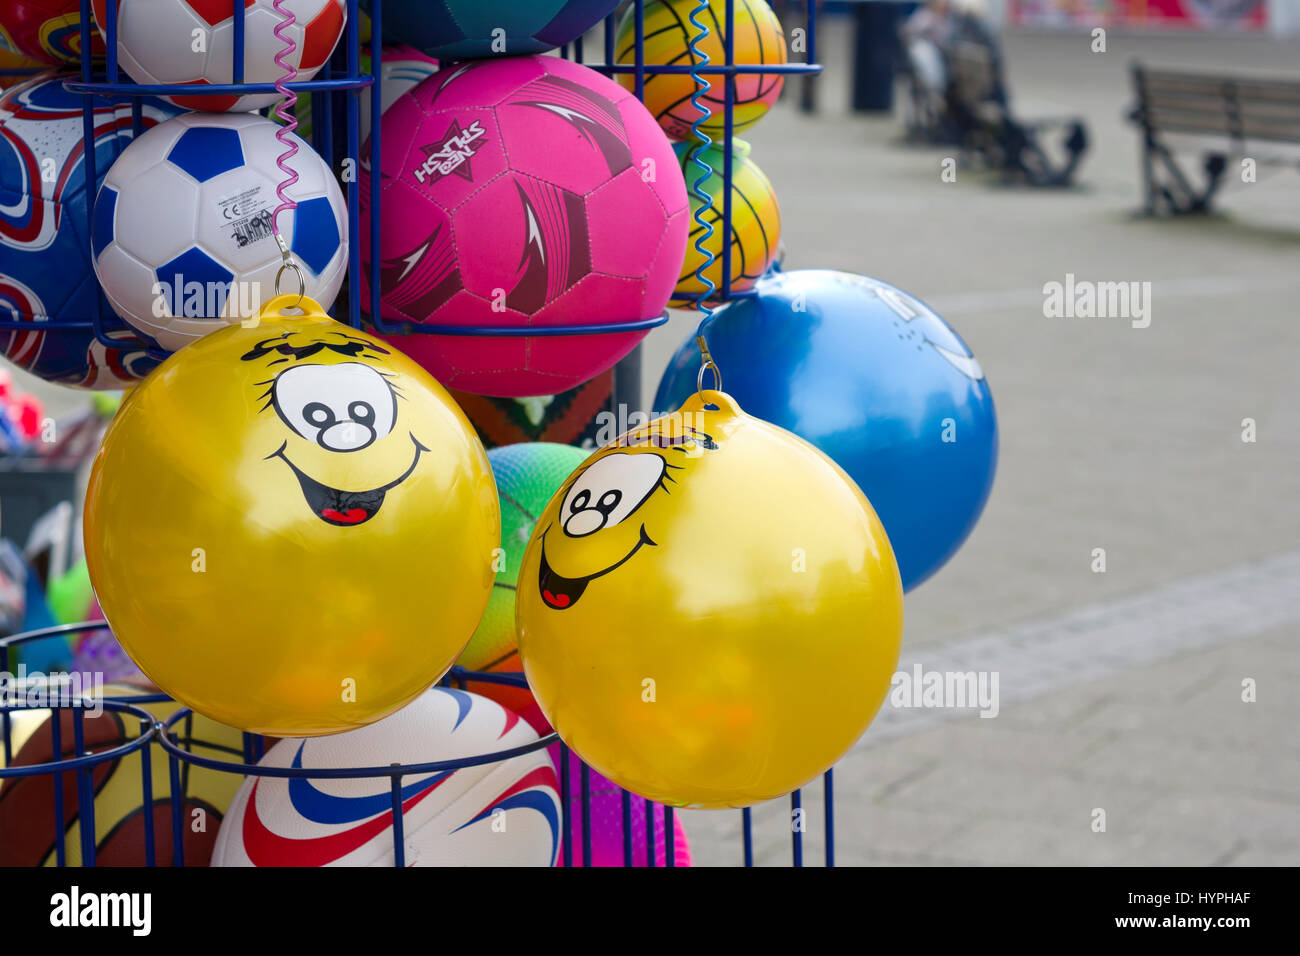 Smiley yellow balloons Stock Photo